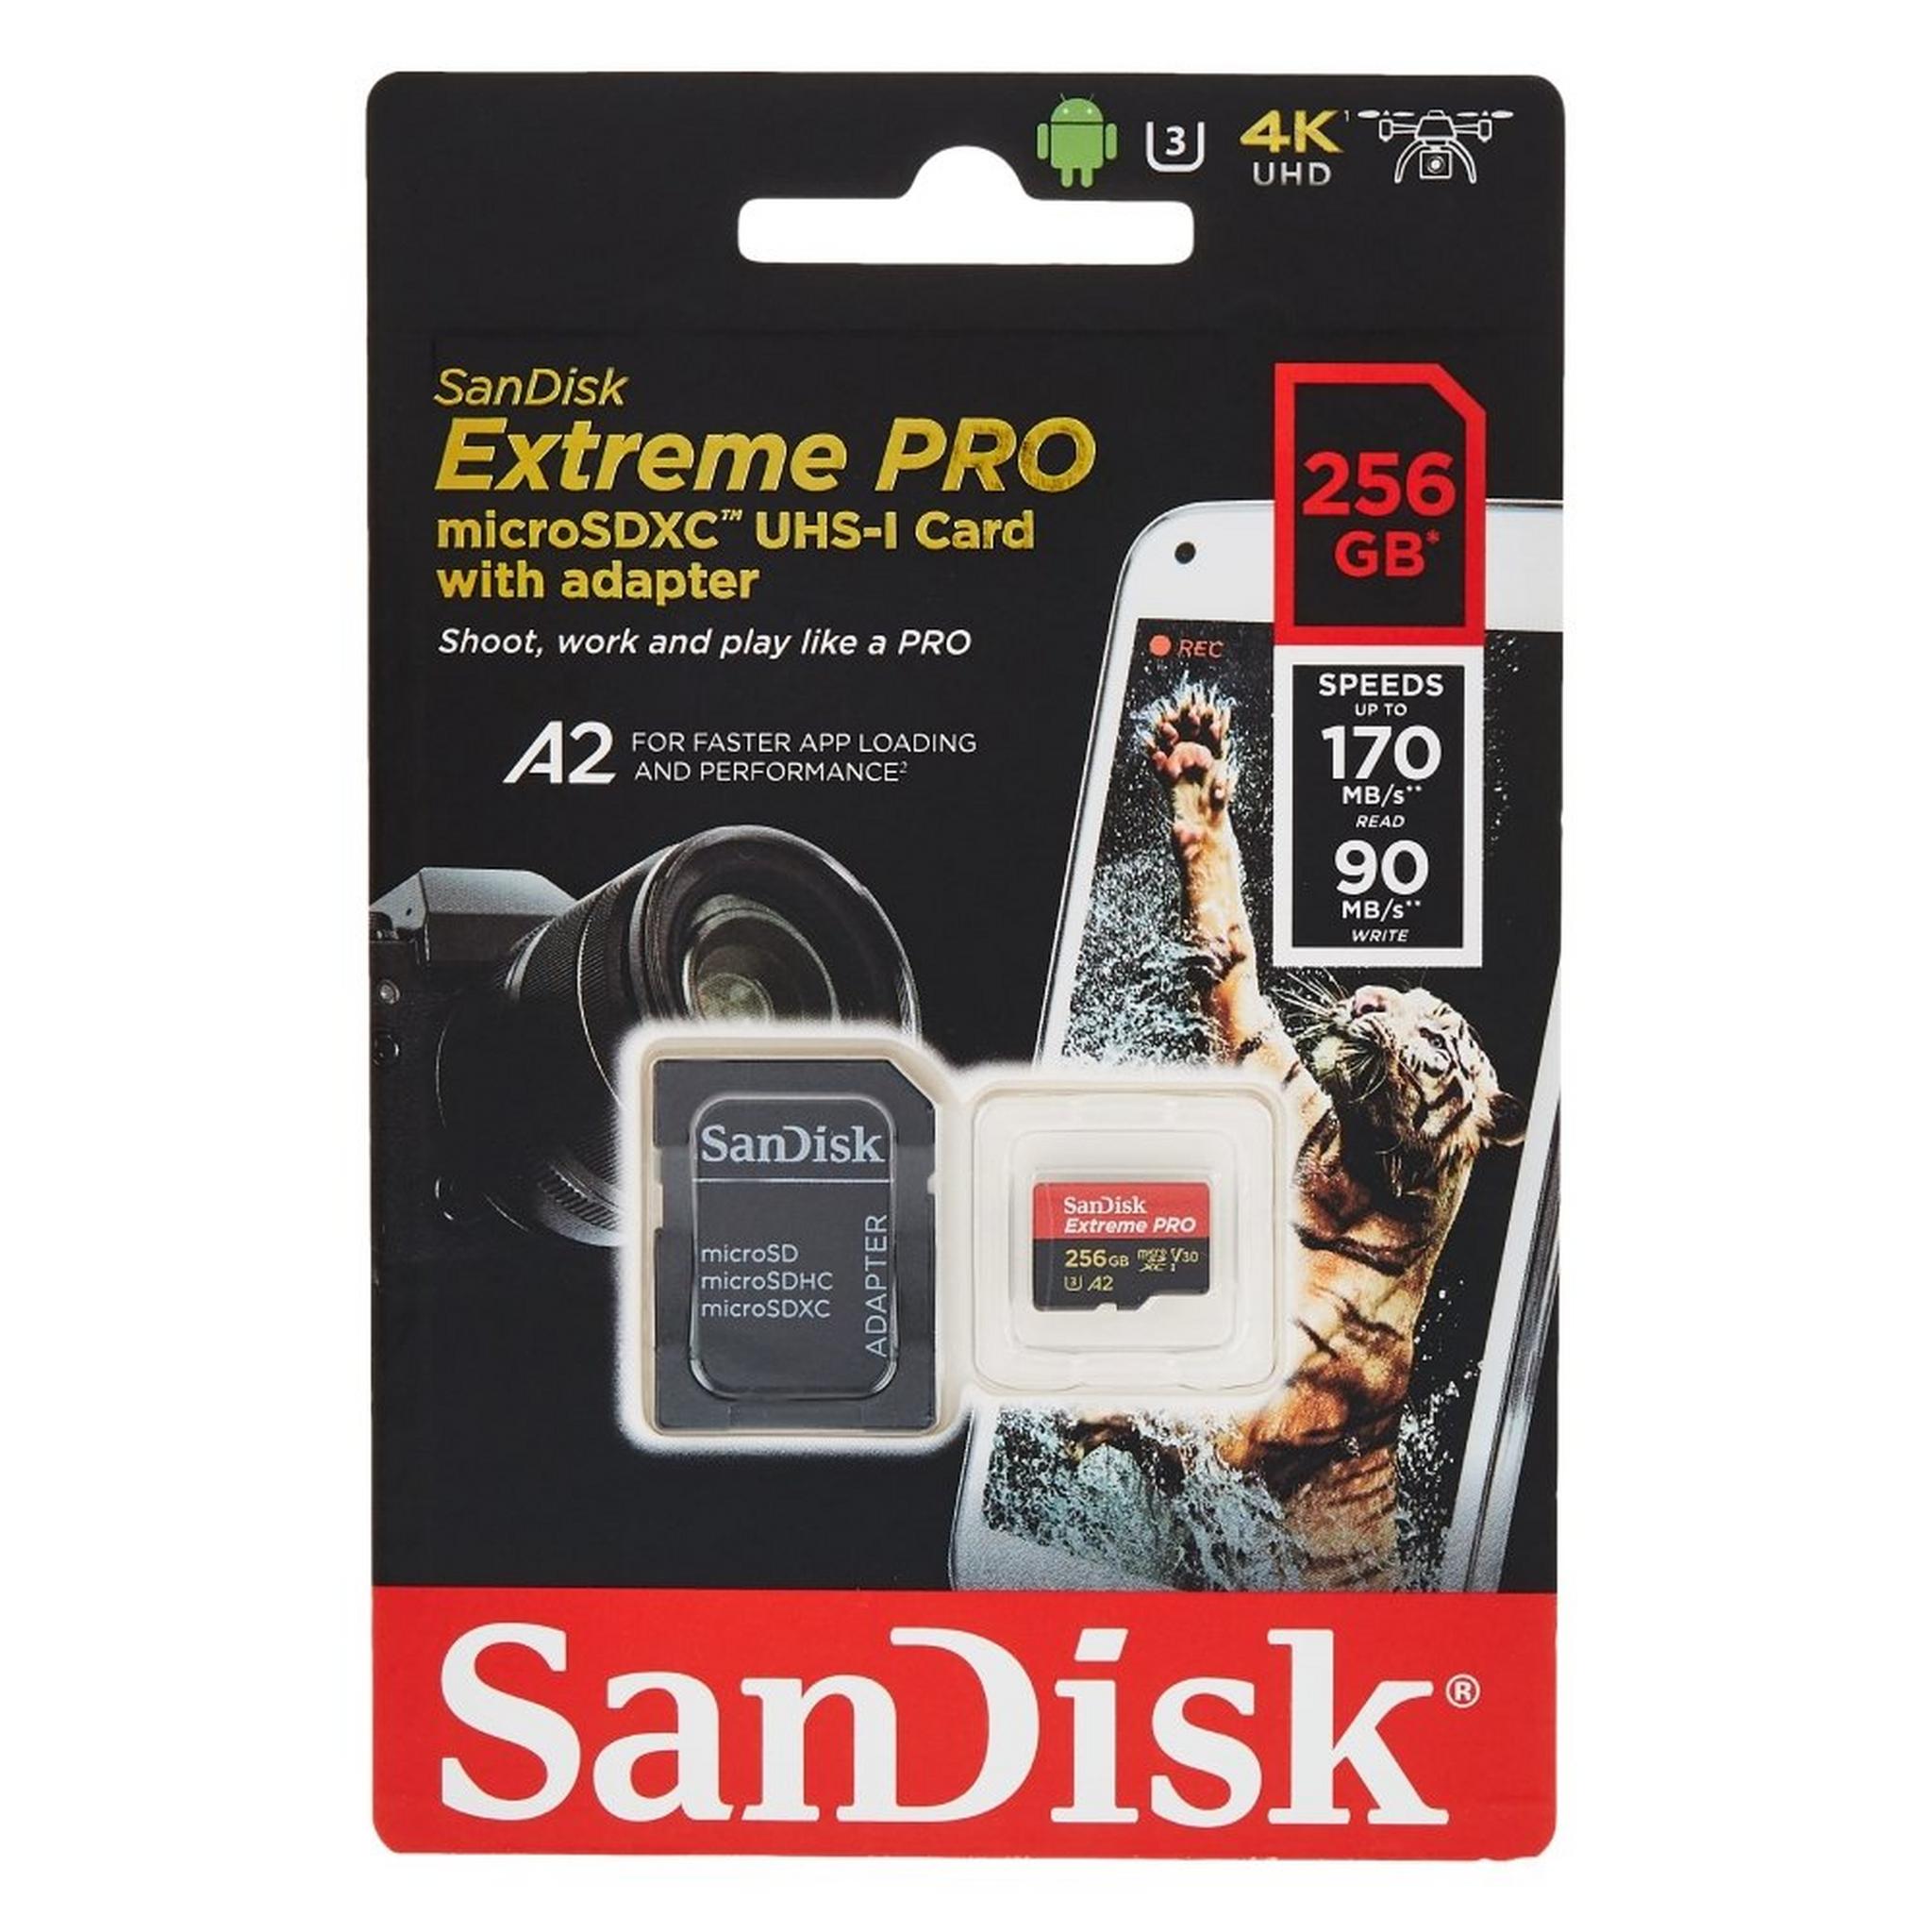 بطاقة الذاكرة سانديسك إكستريم برو® ميكرو إس دي™ يو إتش إس-١ سعة 256 جيجابايت مع محول